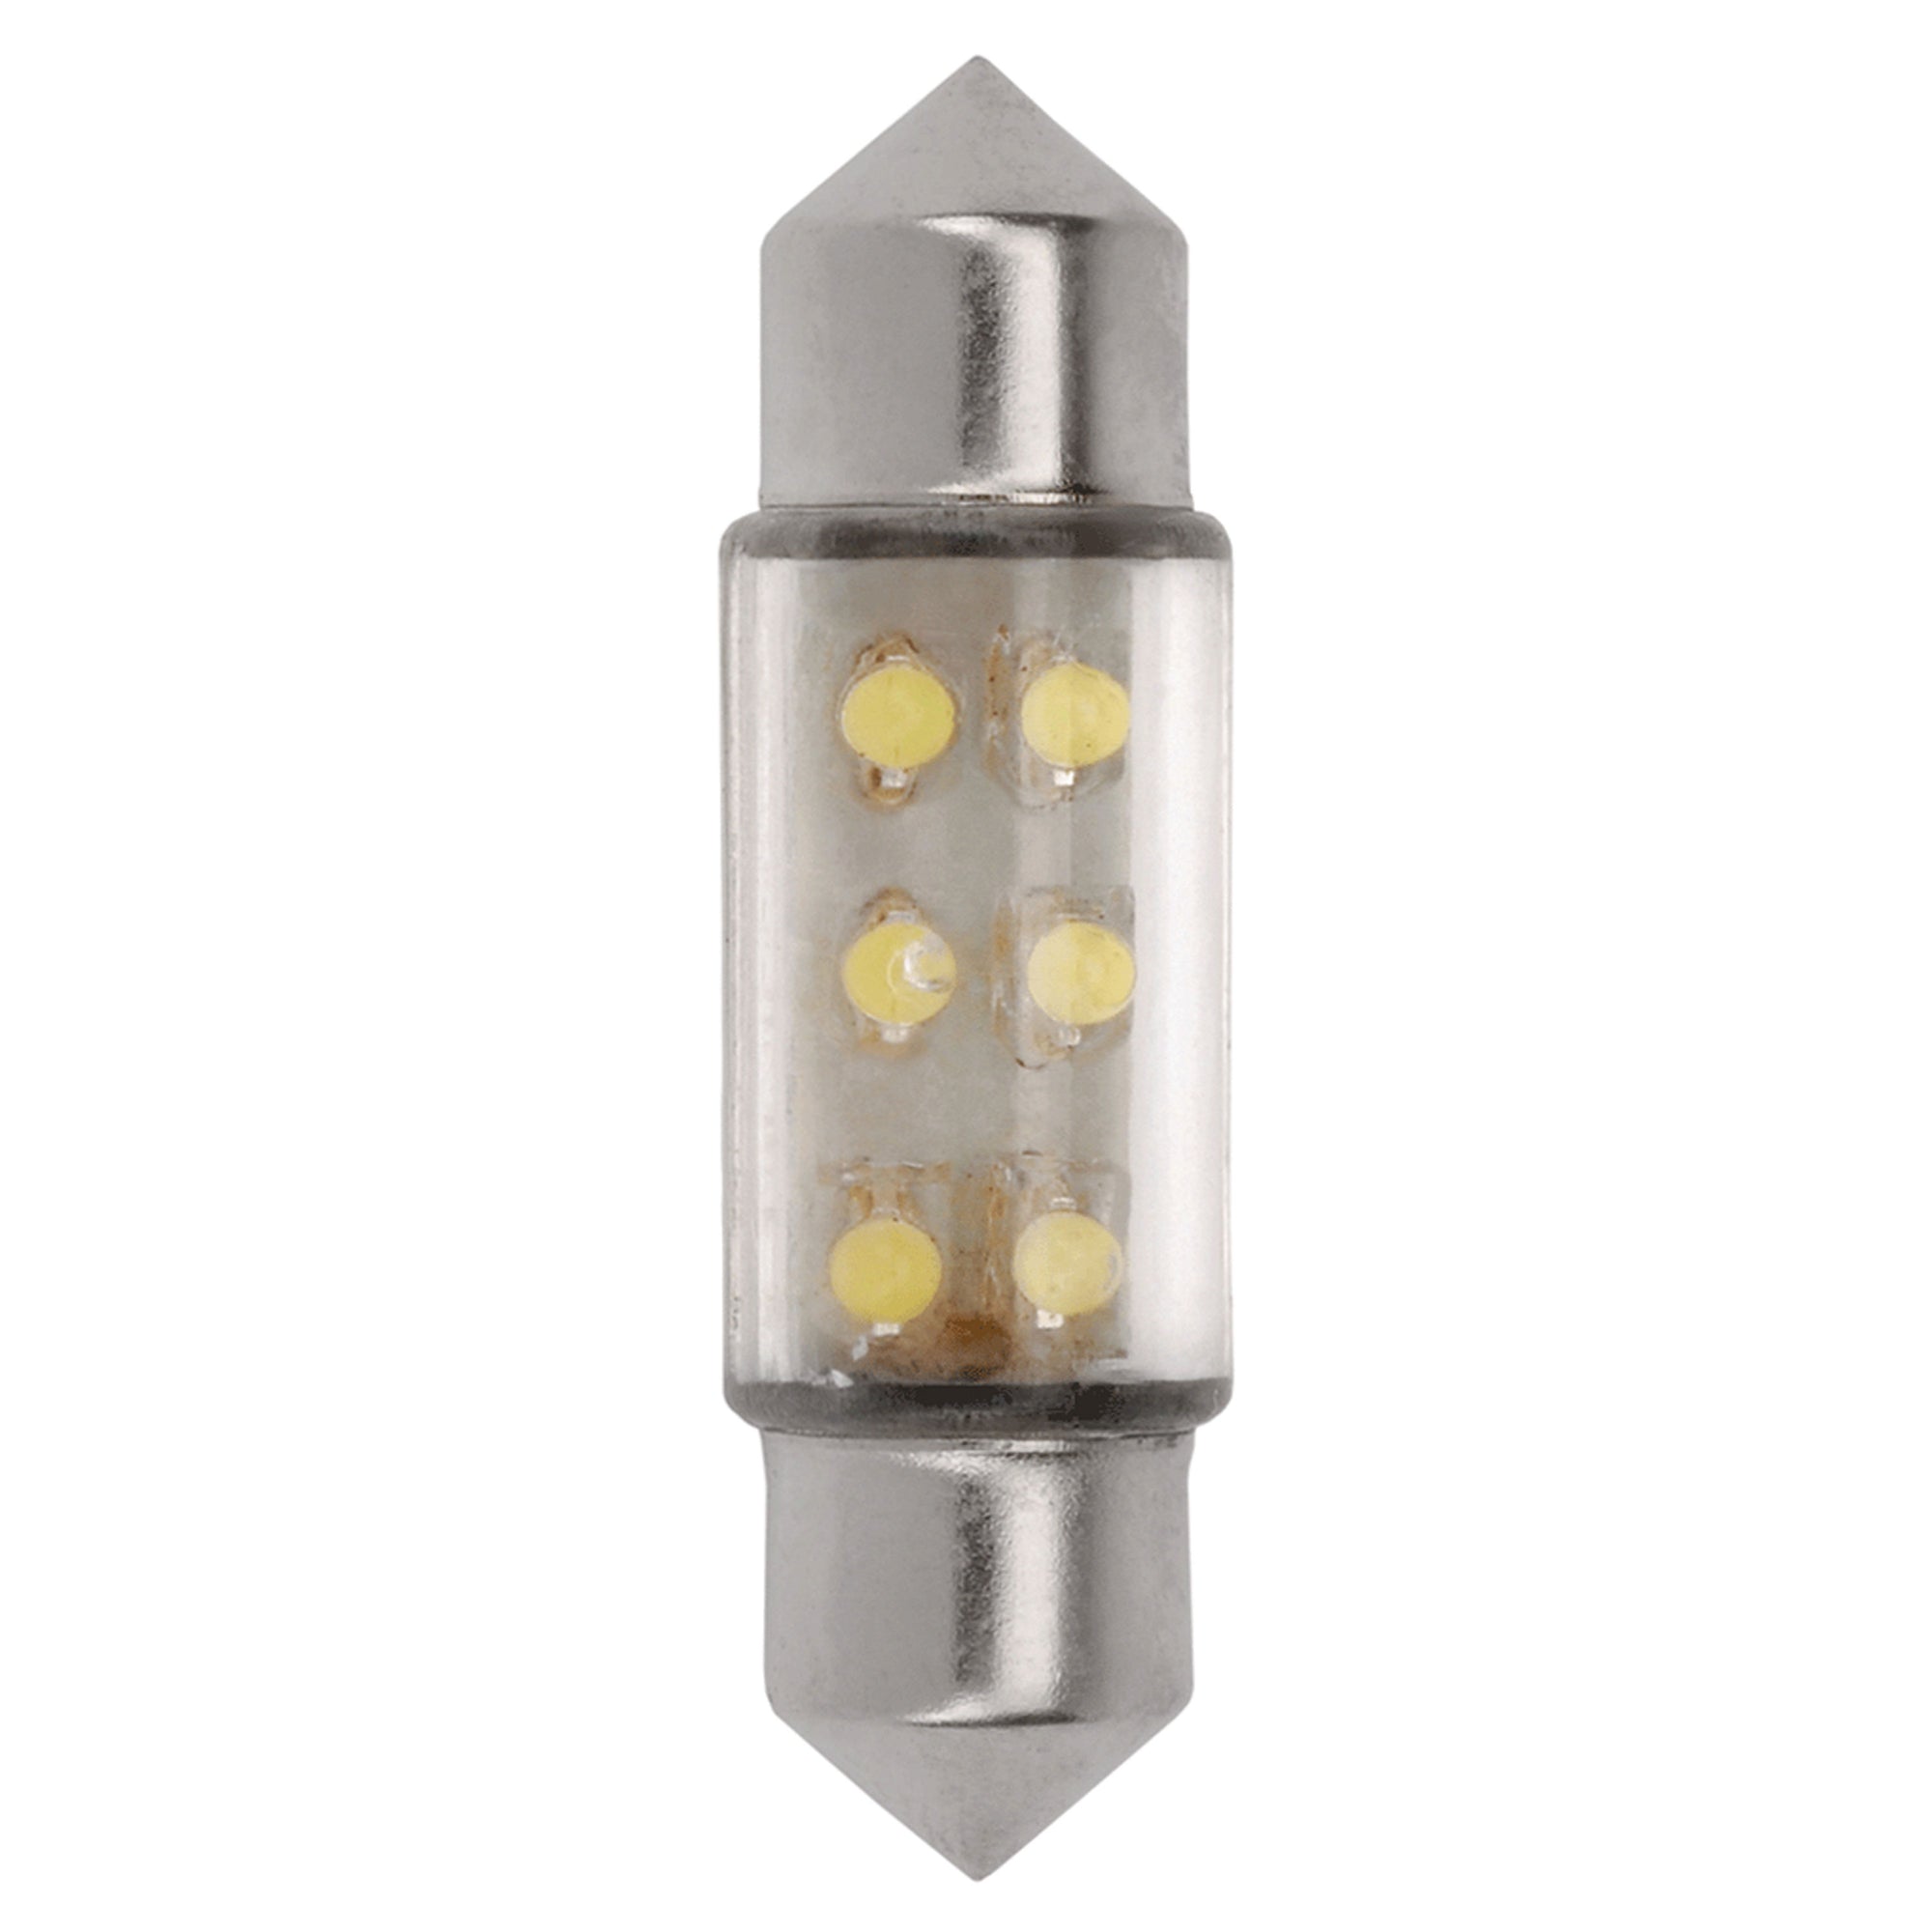 AP Products 016-1036-25 Star Lights 12V DC Revolution LED Light Bulbs - White, 2 Pack